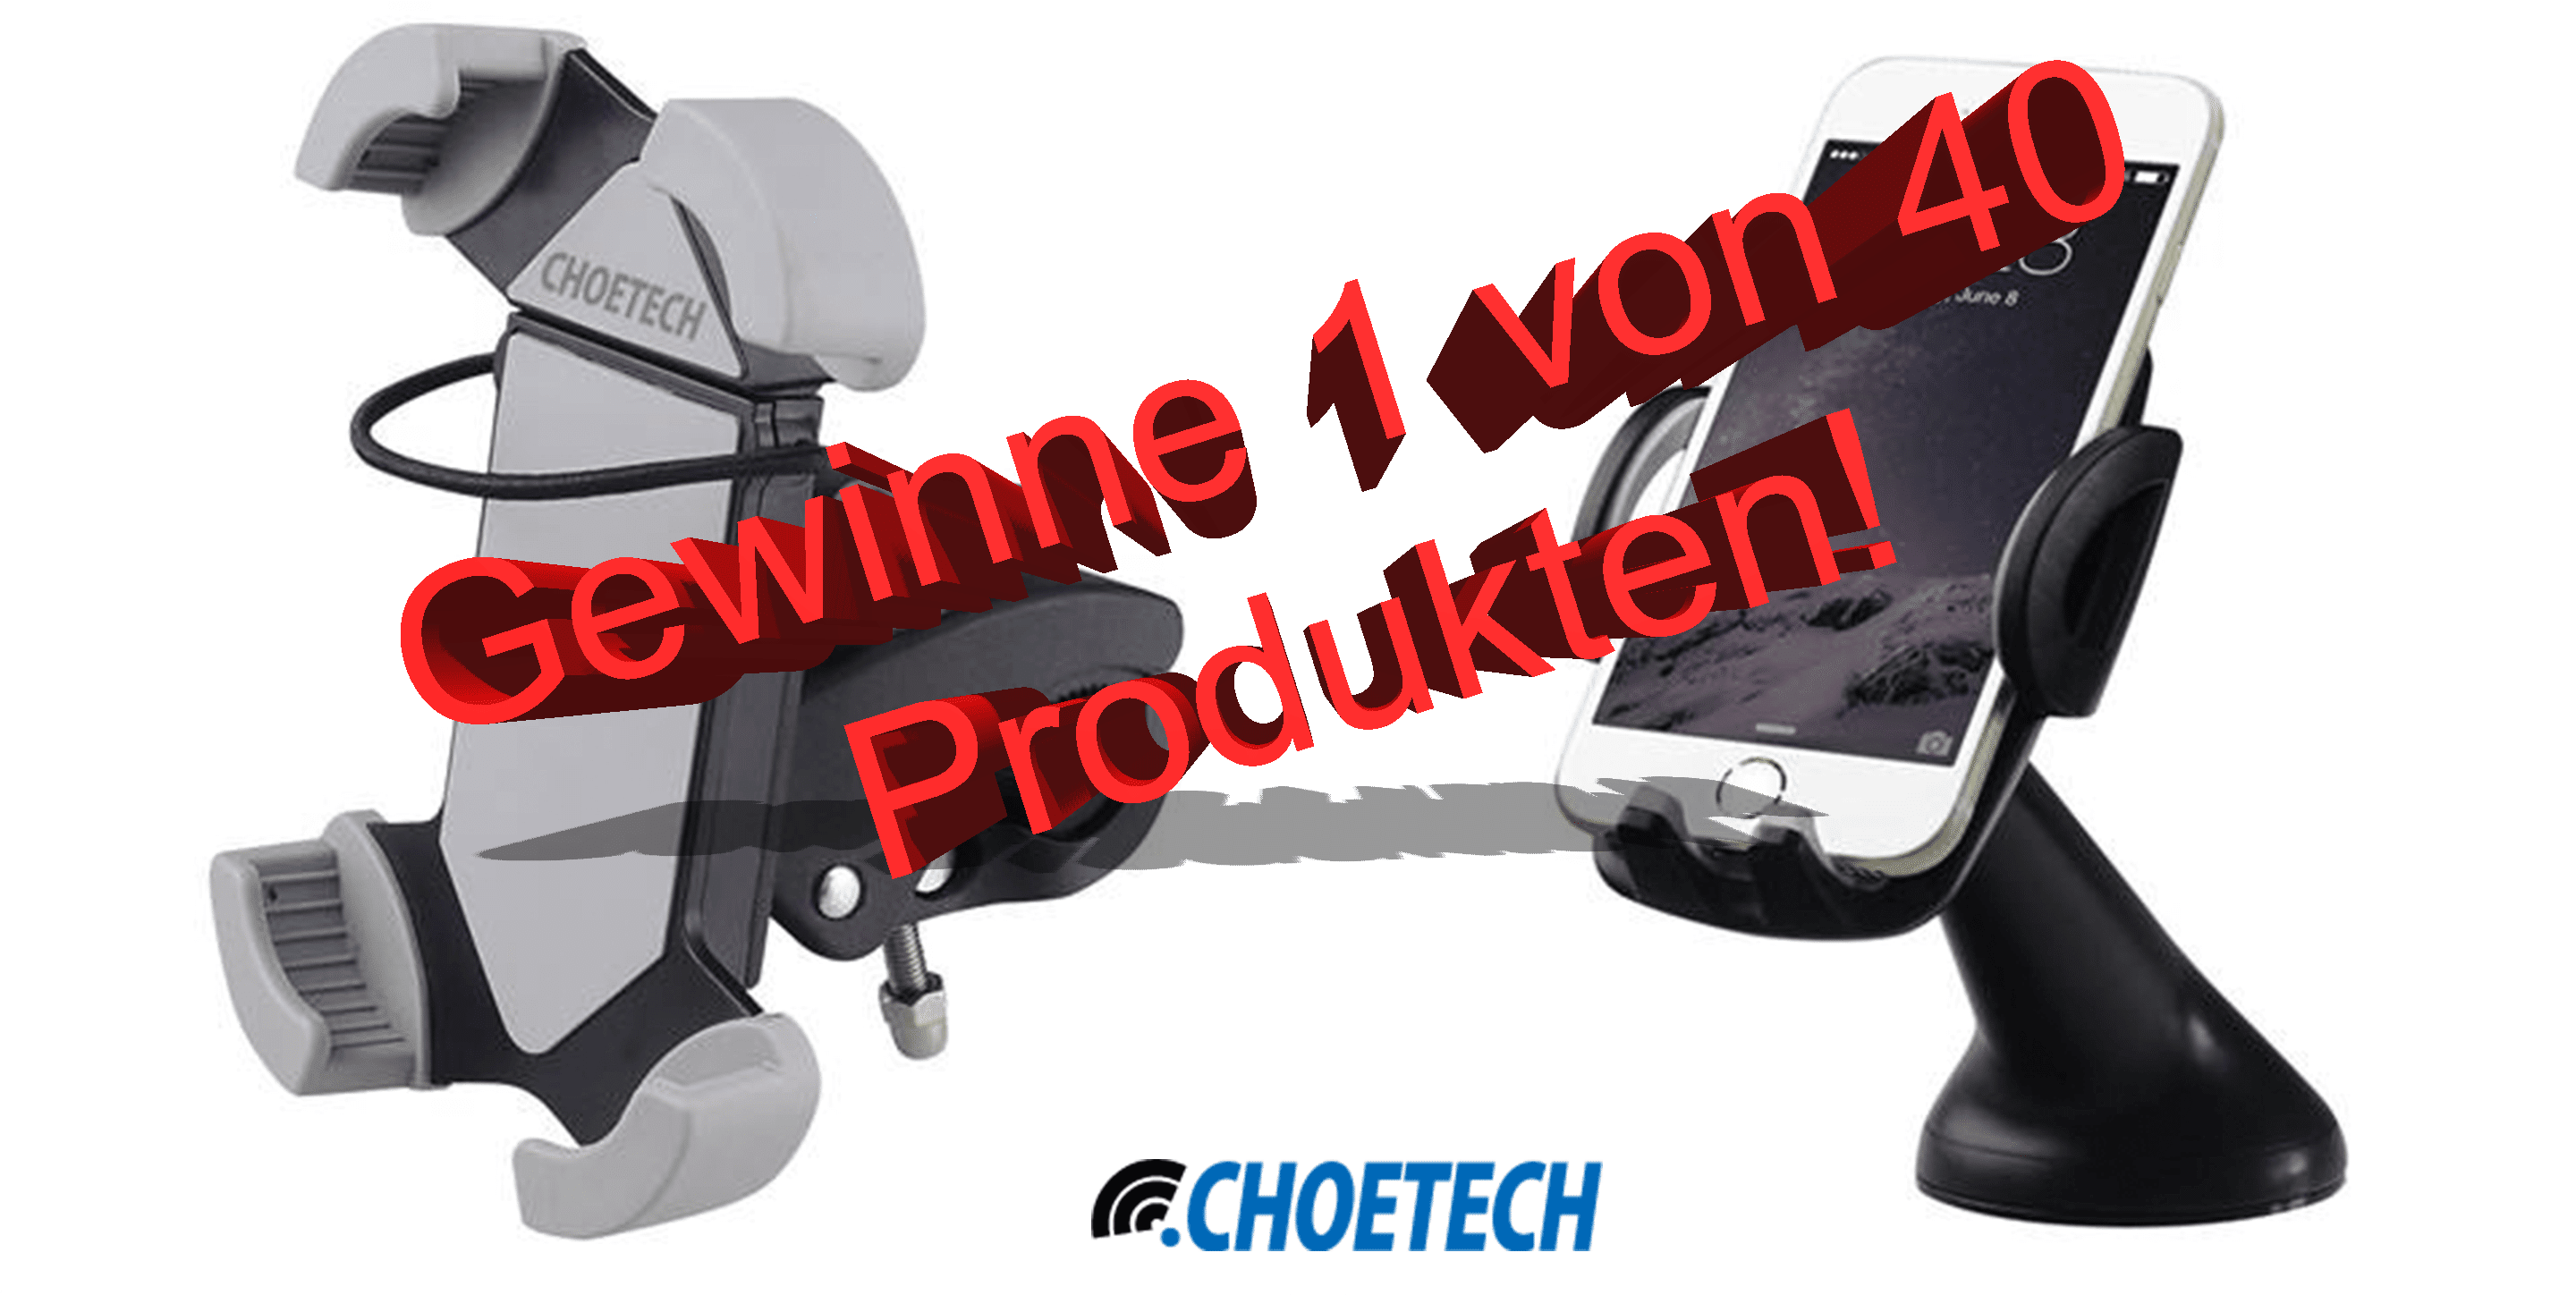 Gewinne 1 von 40 Produkten – Gewinnspiel mit CHOETech